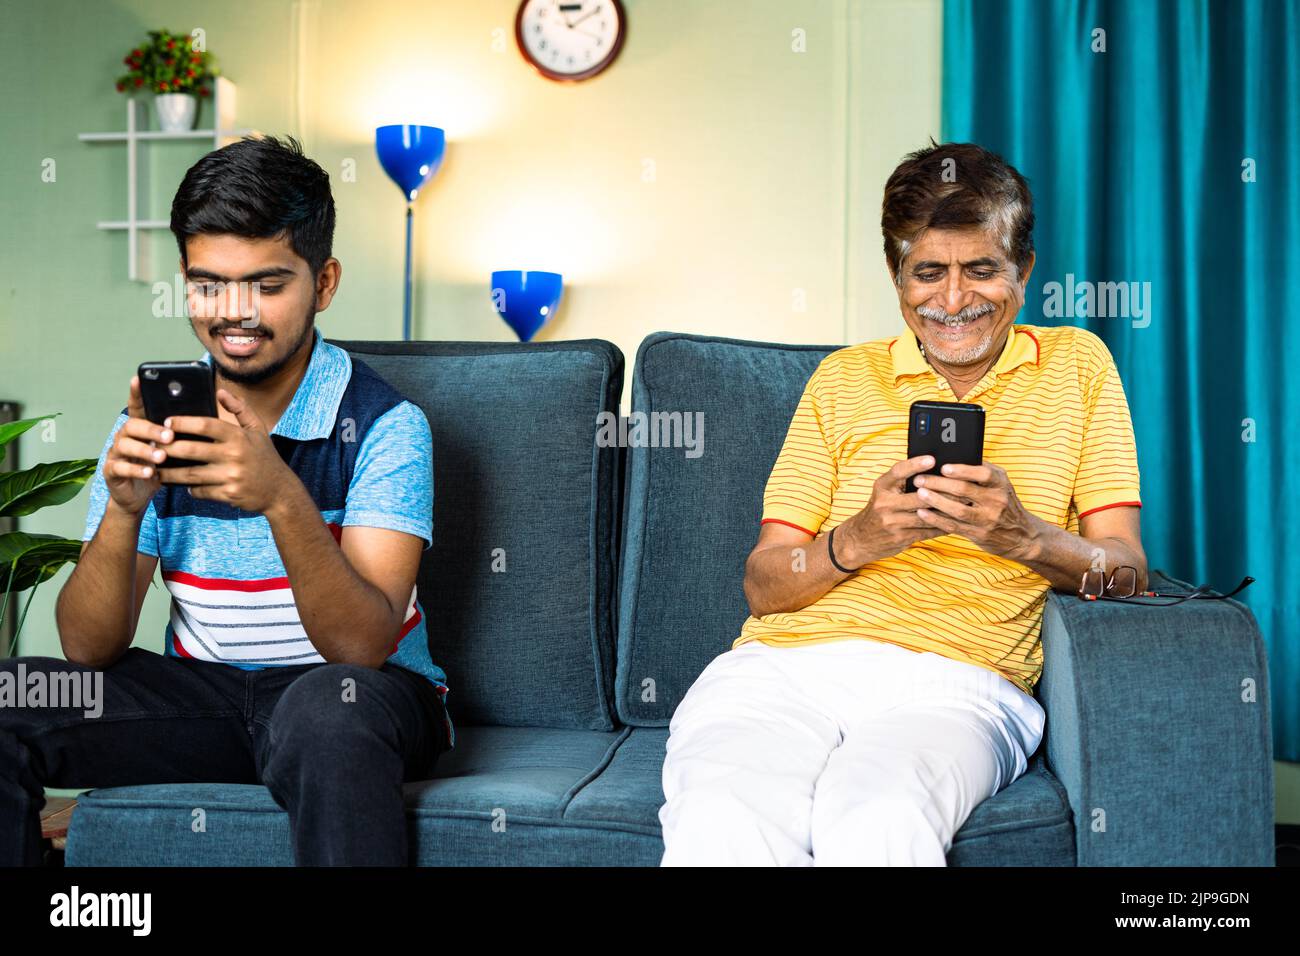 Concentrez-vous sur le père, le père et le fils occupés à utiliser un smartphone tout en étant assis sur un canapé à distance à la maison - concept de dépendance de téléphone mobile, numérique Banque D'Images